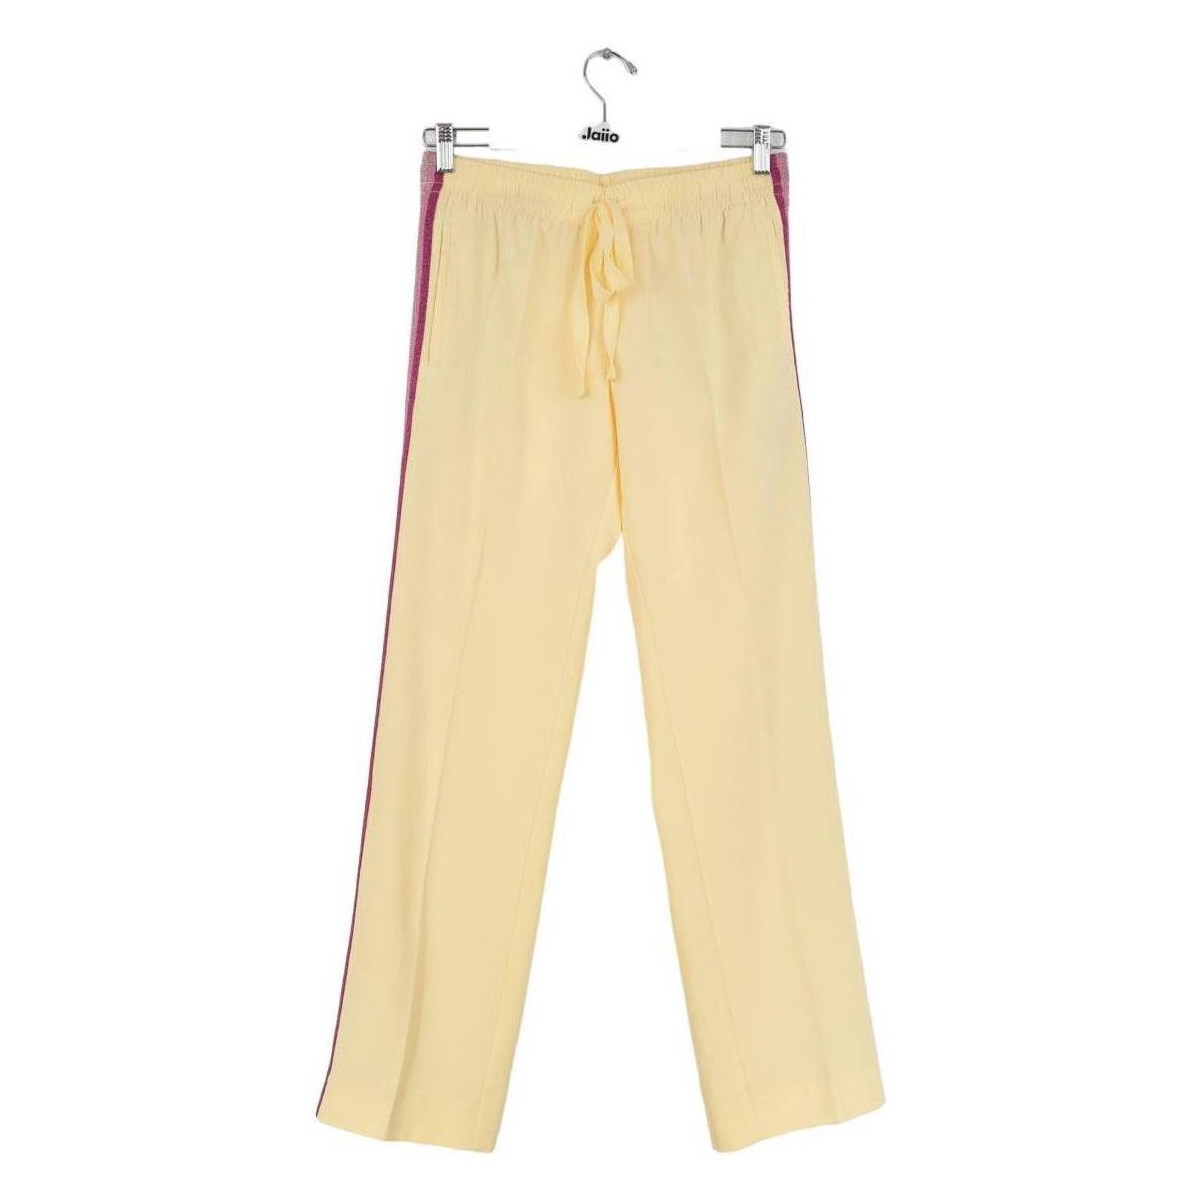 Vêtements Femme Pantalons Voir toutes les ventes privées Pantalon large jaune Jaune